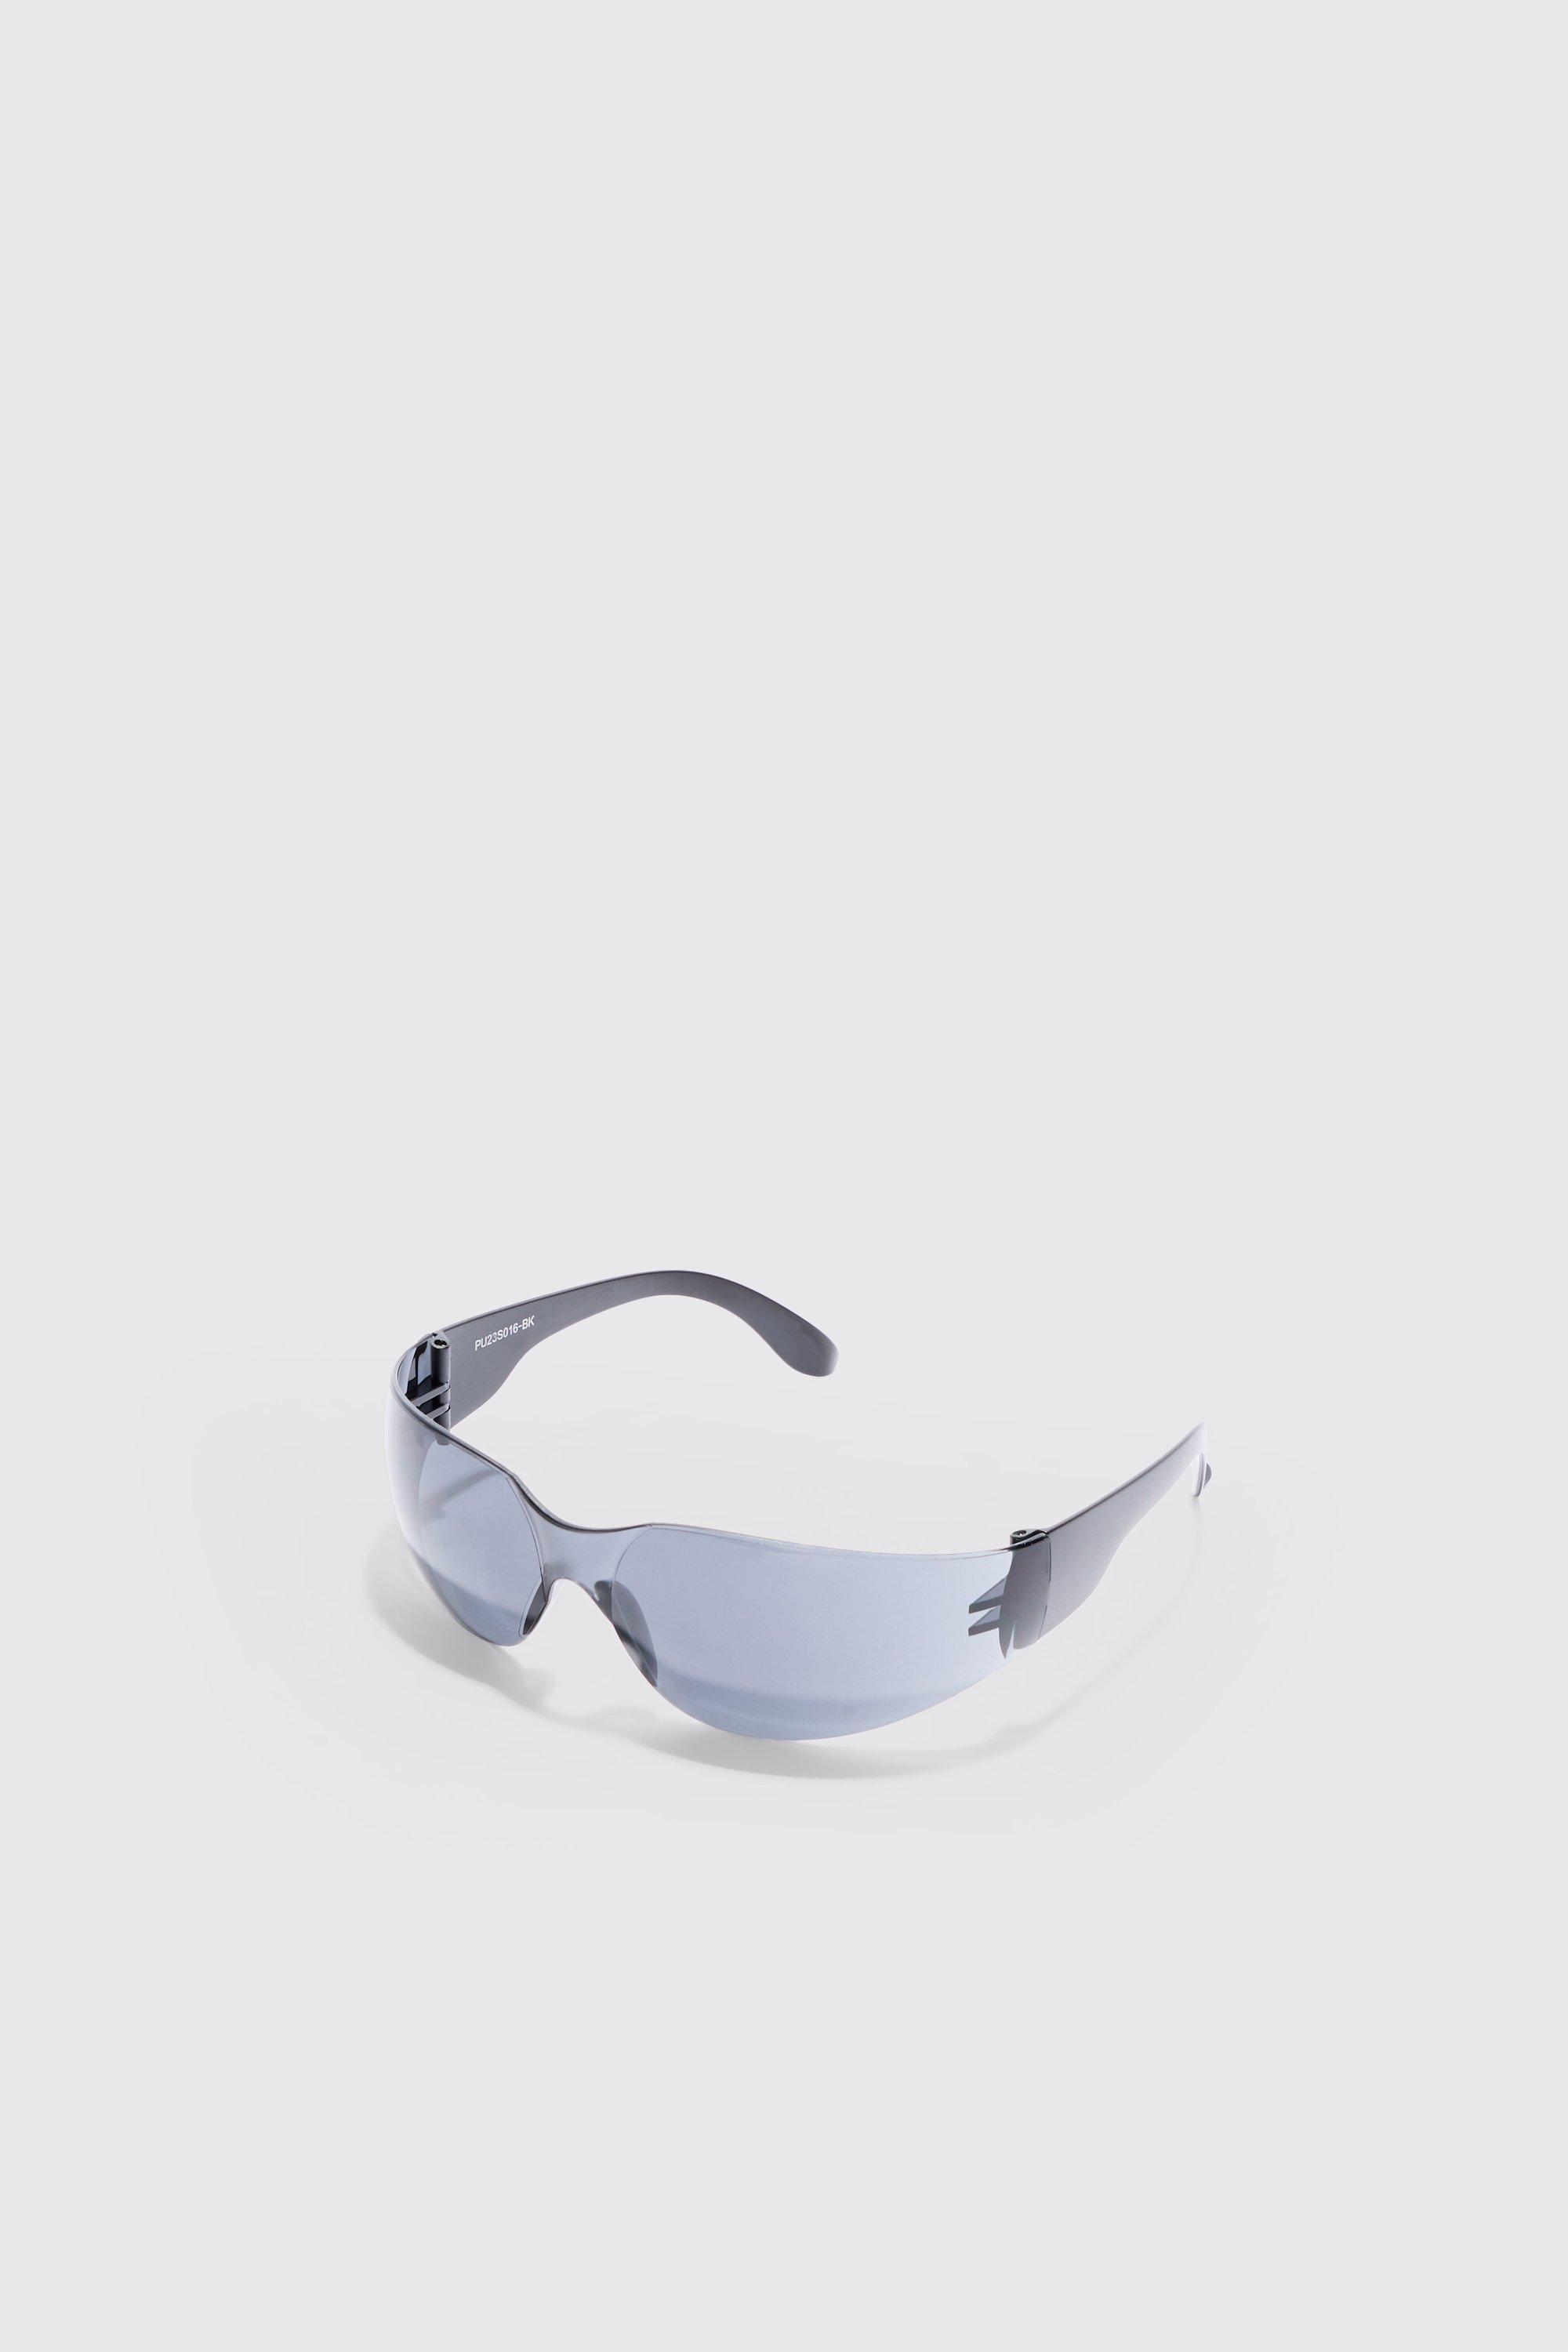 Image of Frameless Plastic Sunglasses In Black, Nero